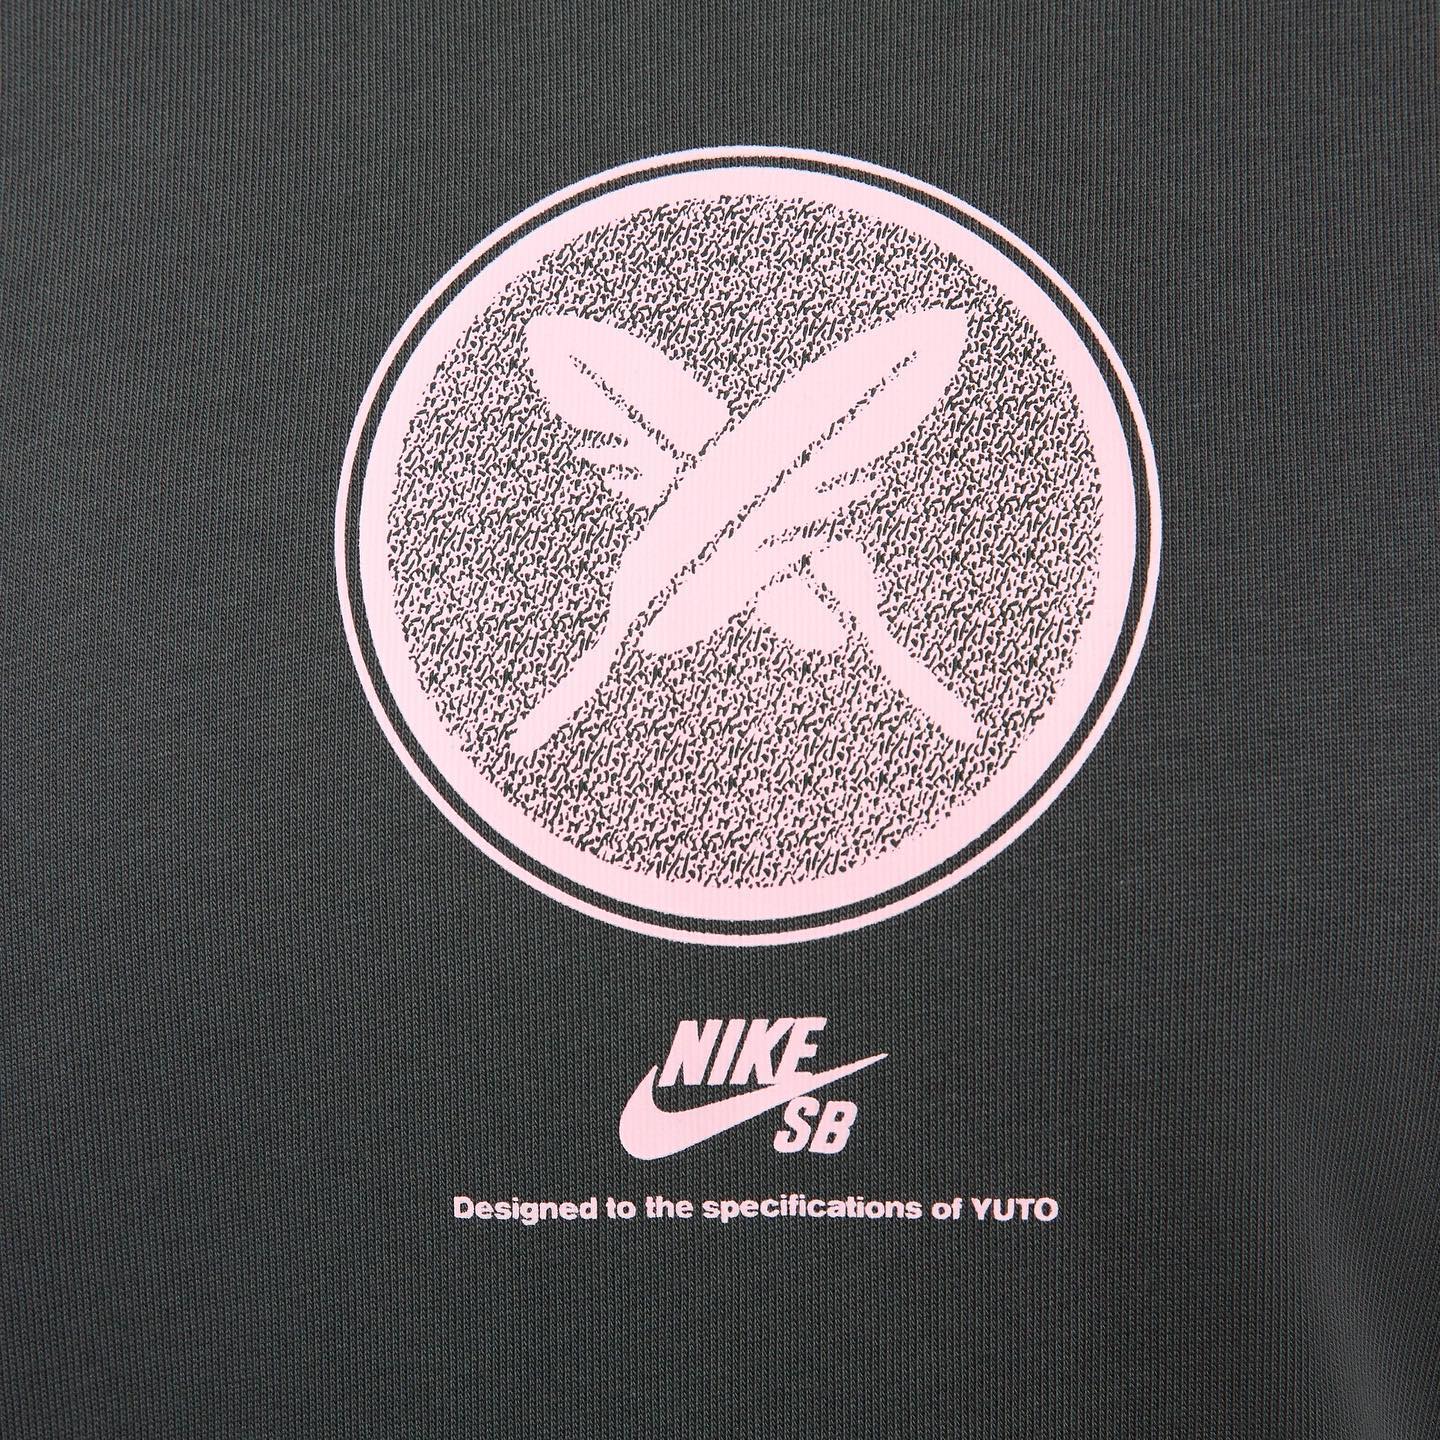 8月25日(金)発売 Yuto Horigome x Nike SB Collection 東京の江東区で生まれ育ち単身アメリカへ渡り、数々の快挙を遂げ続けている堀米雄斗の記念すべきNike SBとのコラボレーションが遂に実現。堀米家の家紋をモチーフにしたロゴや、彼のスケートボードの原点でもあるローカルスポット(SSP)をイメージしたコレクションからは、自身のルーツでもある家族や地元に対するリスペクトを感じることができます。8月25日は、スケーターのみならず多くの人に感動と勇気を与えてくれた堀米雄斗をお祝いしましょう。Arigato @yutohorigome販売方法に関してはプロフィールリンク先のブログをご確認下さい。※浦安ストアでの販売はございません。※販売足数、入荷サイズ、発売前のご予約など販売に関する事前お問い合わせはご遠慮下さい。※no overseas shipment.#yutohorigome#堀米雄斗#nikesb@nikesbdojo#instantskateshop